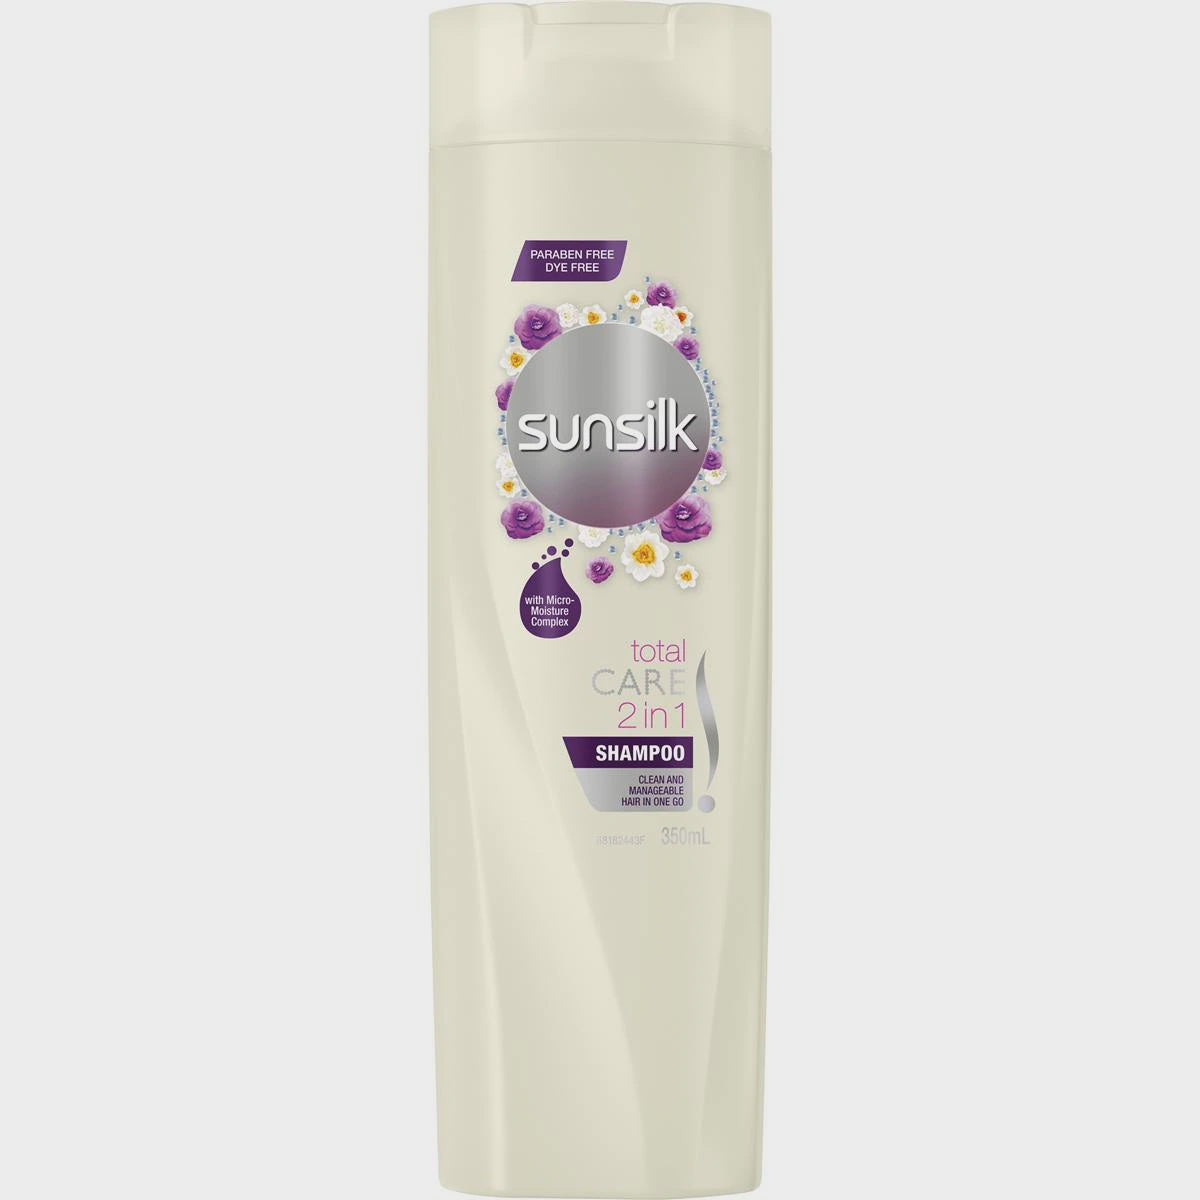 Sunsilk Total Care 2 in 1 Shampoo 350ml